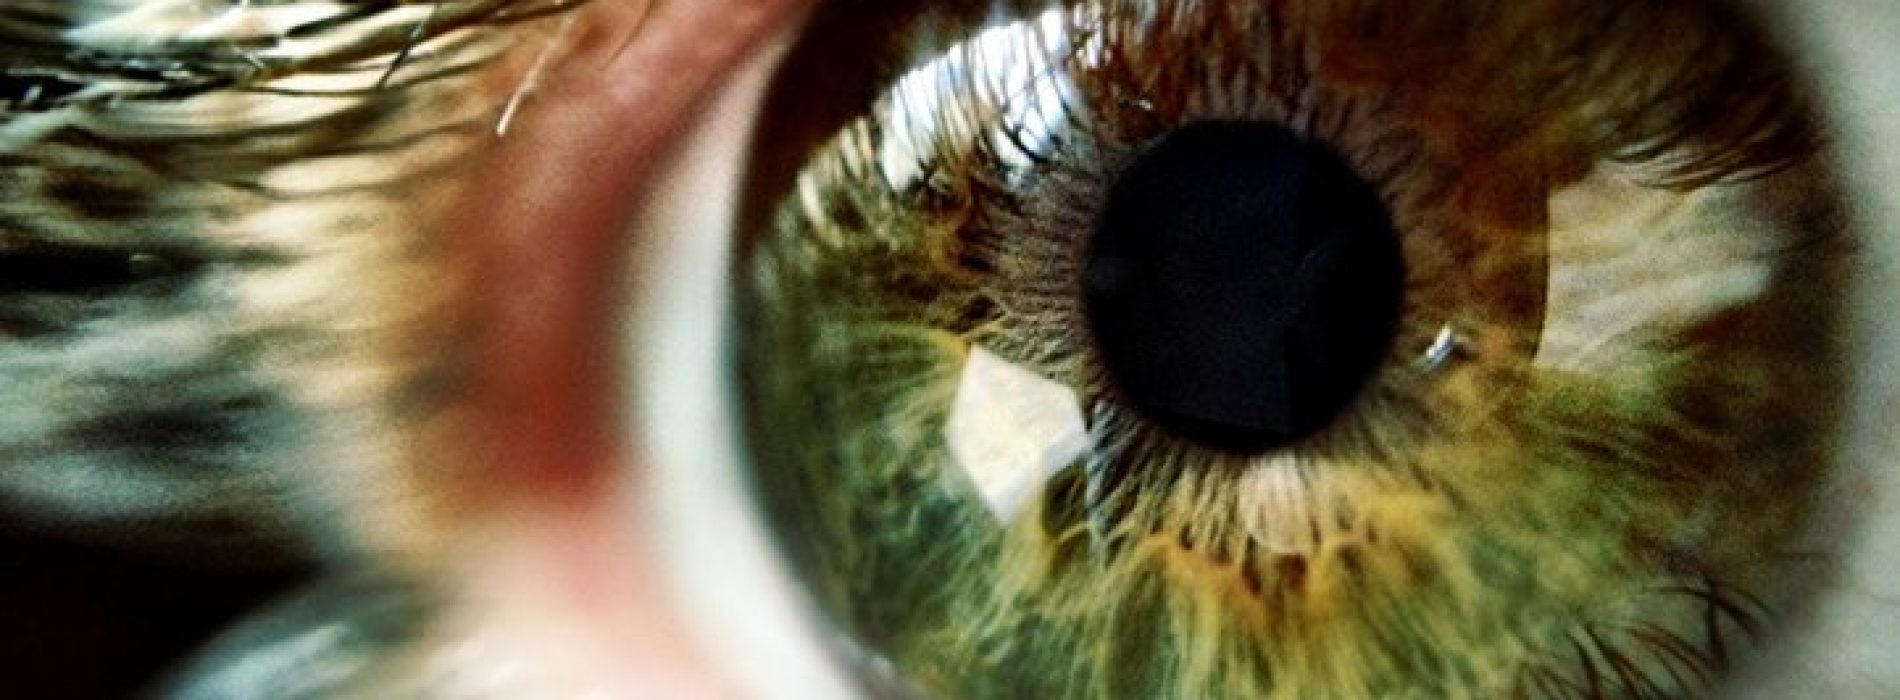 Tips voor het verbeteren van de gezondheid van de ogen en het voorkomen van maculaire degeneratie